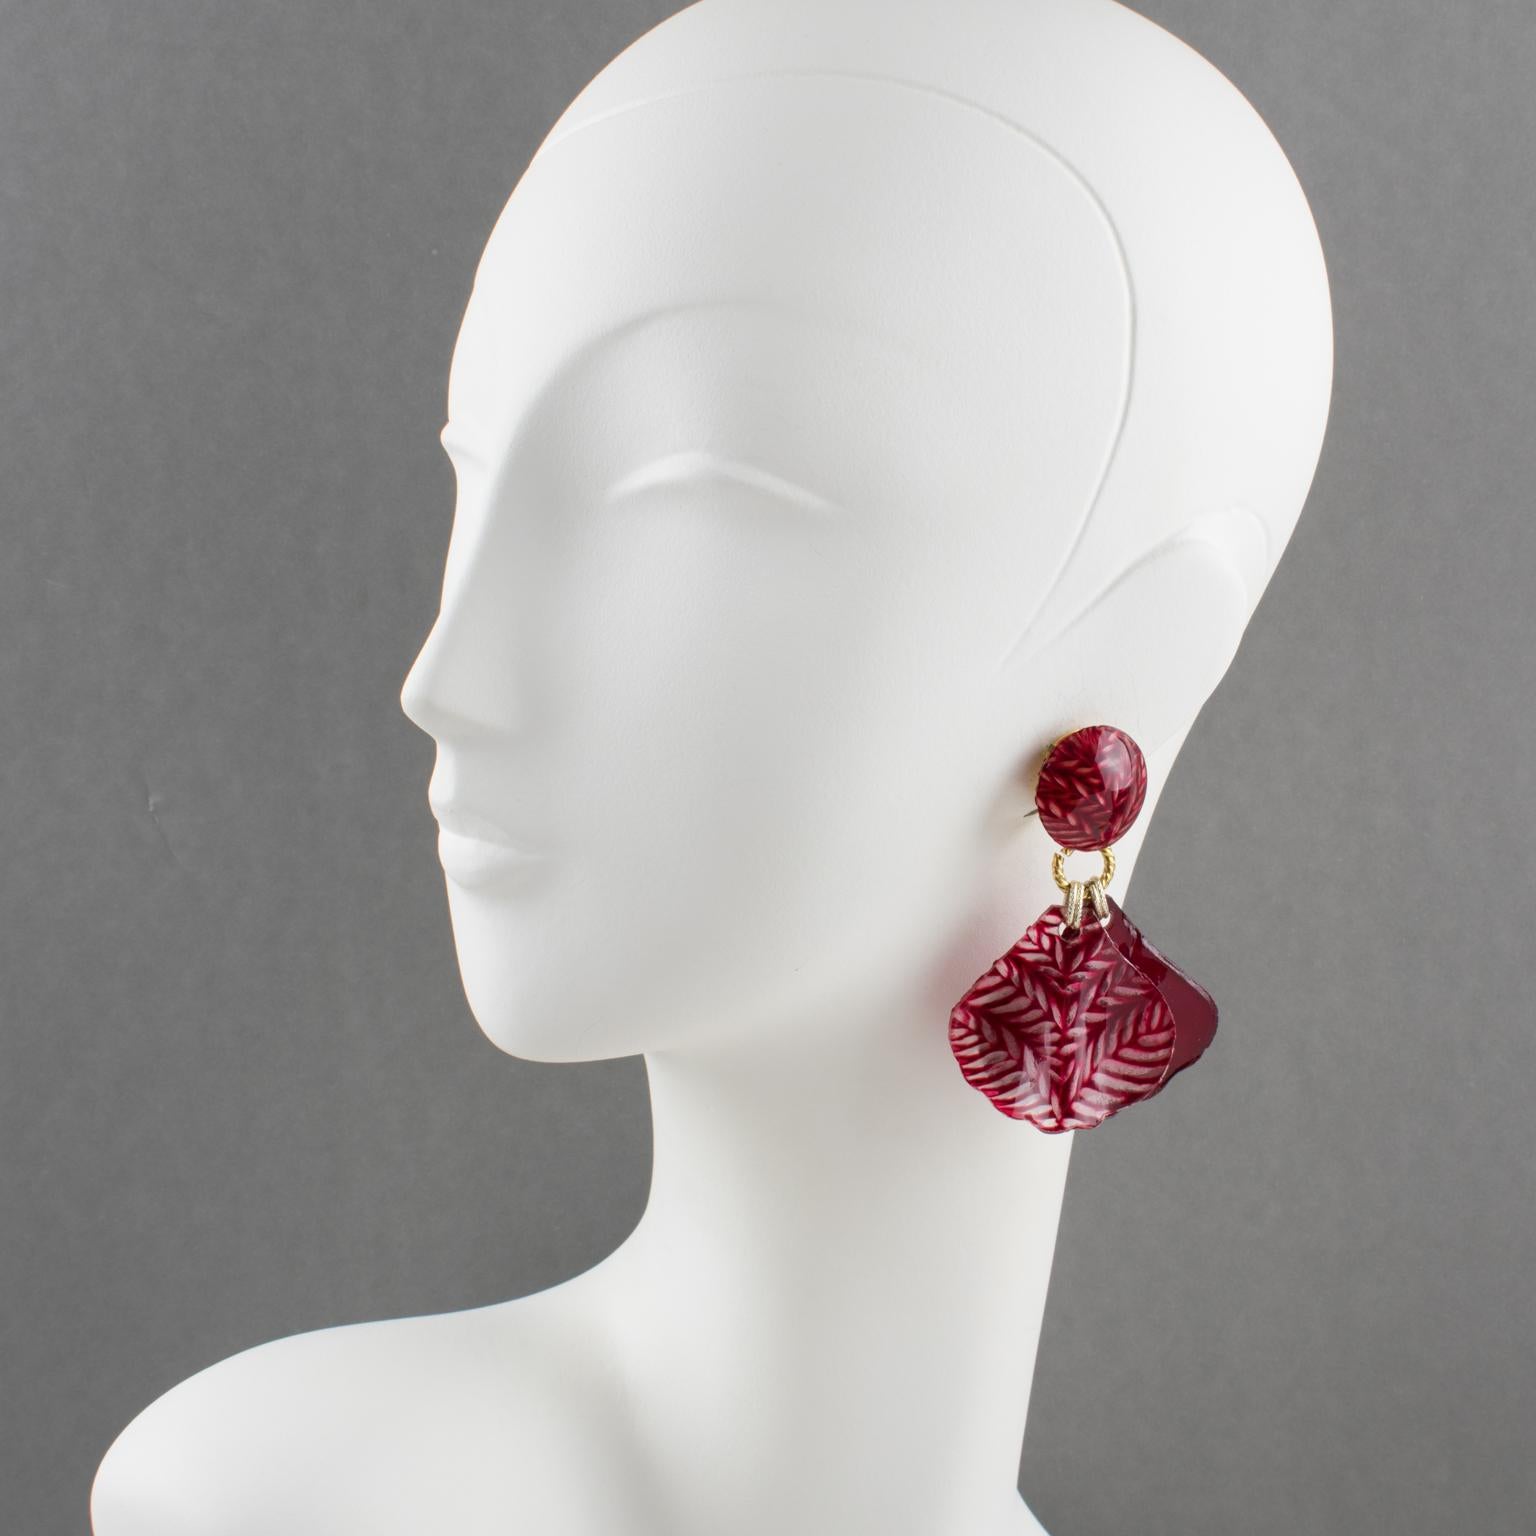 Cilea Paris hat für die französische Designerin Francoise Montague Paris diese niedlichen Ohrringe zum Anstecken entworfen. Sie haben eine massive, hängende Form aus bordeauxrotem Harz mit gewellten Blütenblättern, eine mit glänzender, einfarbiger